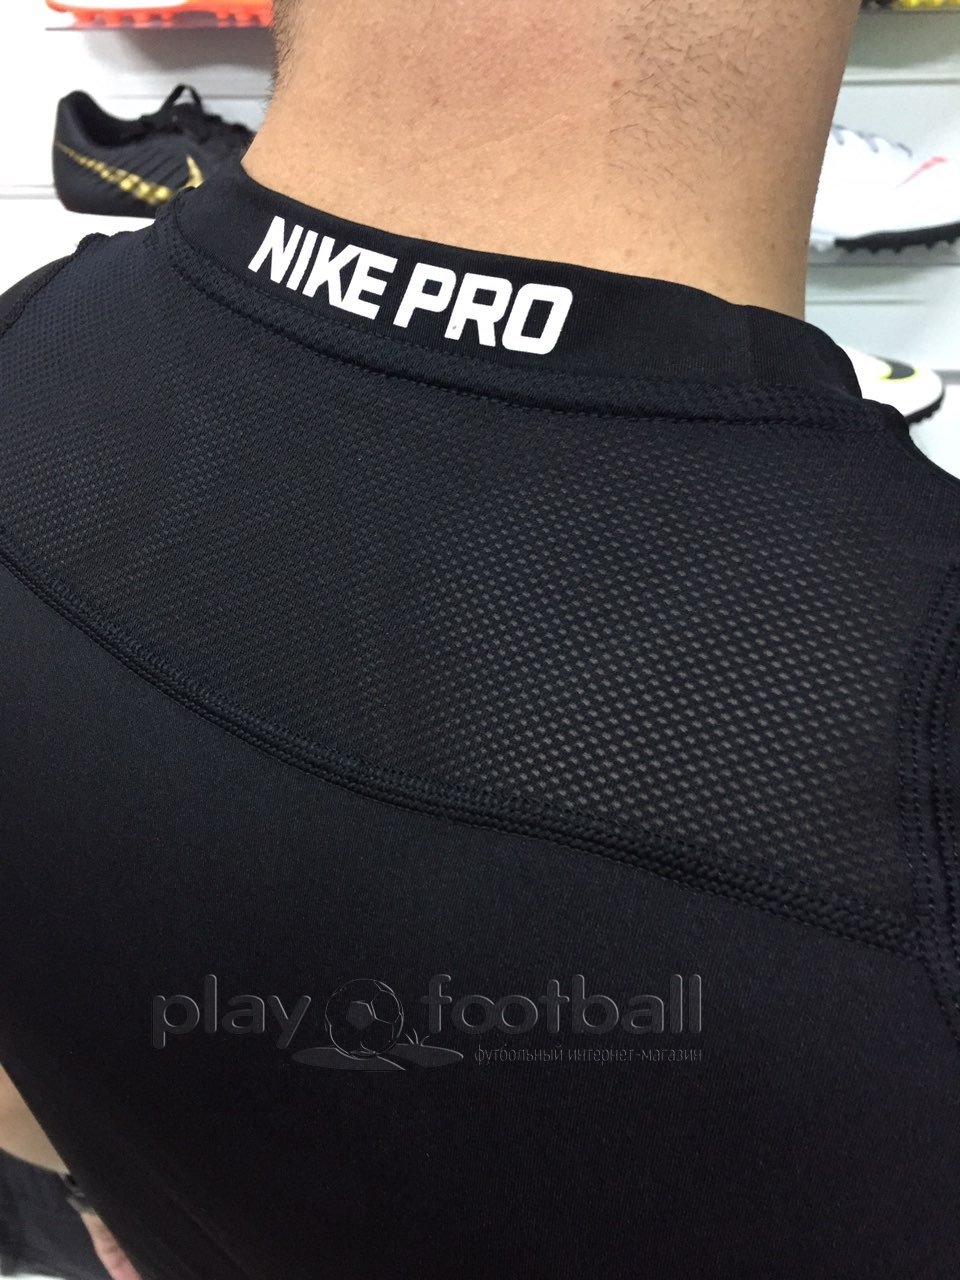 Nike Pro Compression (838091-010)купить в Киеве в интернет-магазине Playfootball